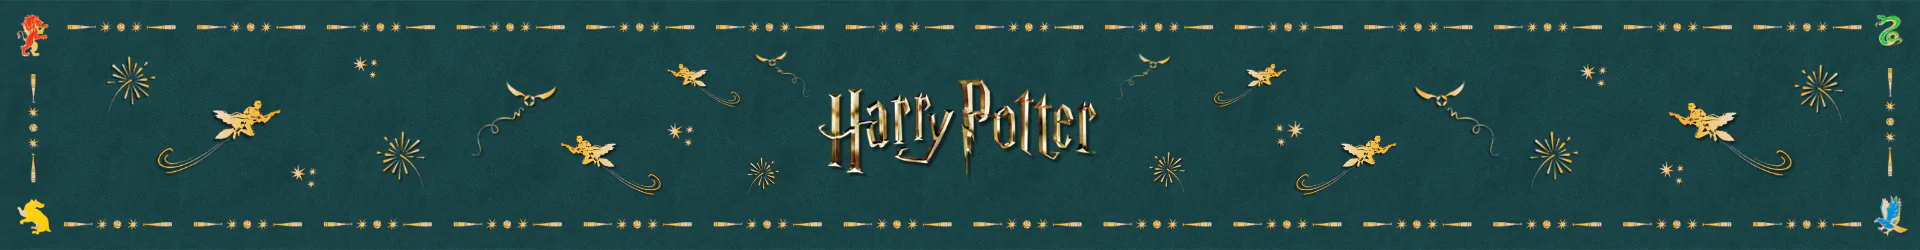 Harry Potter tischwaren  banner